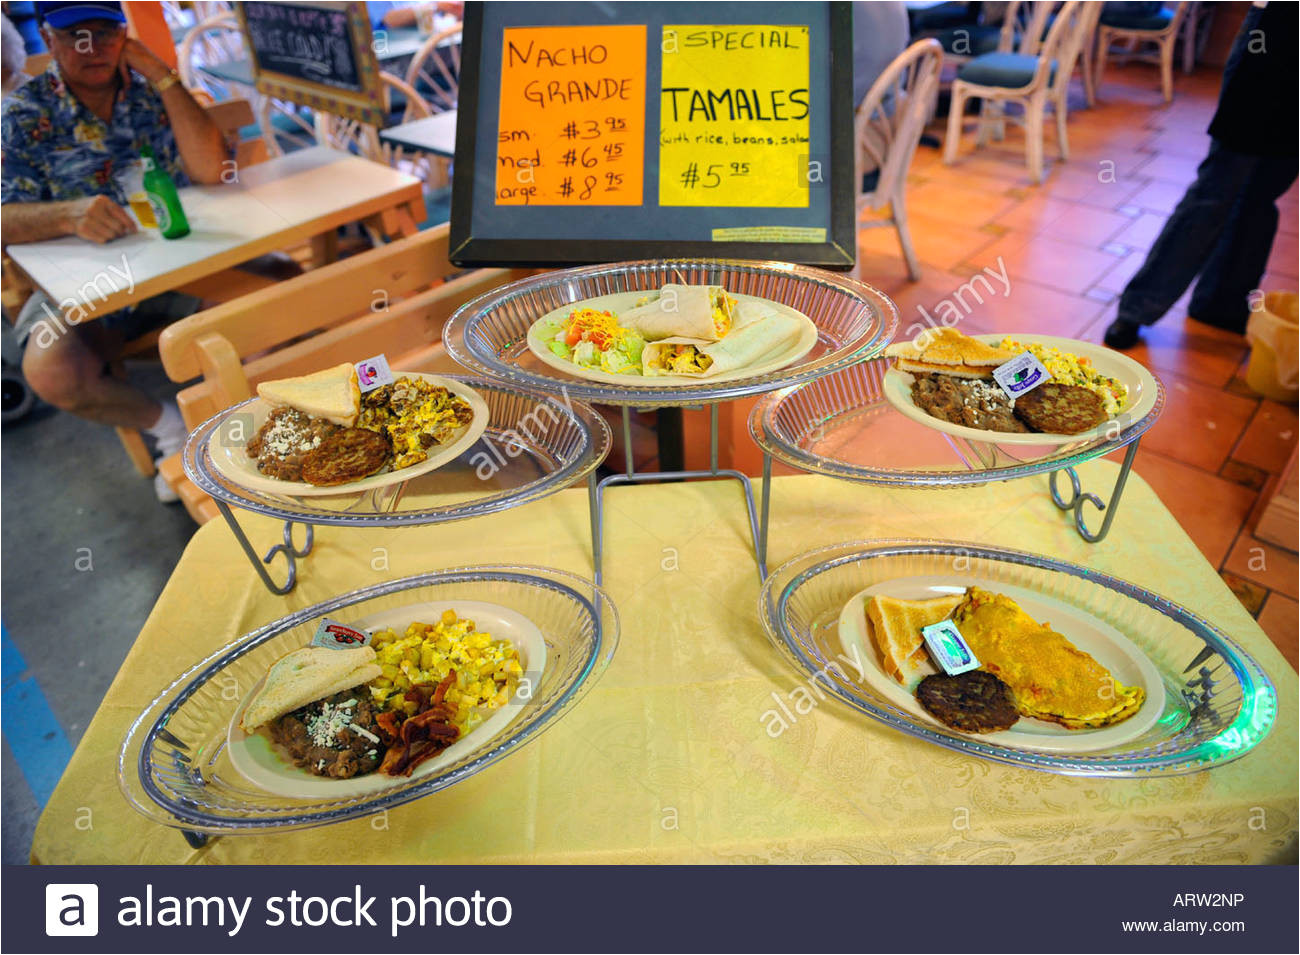 visualizacia n de nacho grande y tamales para su venta en un restaurante imagen de stock